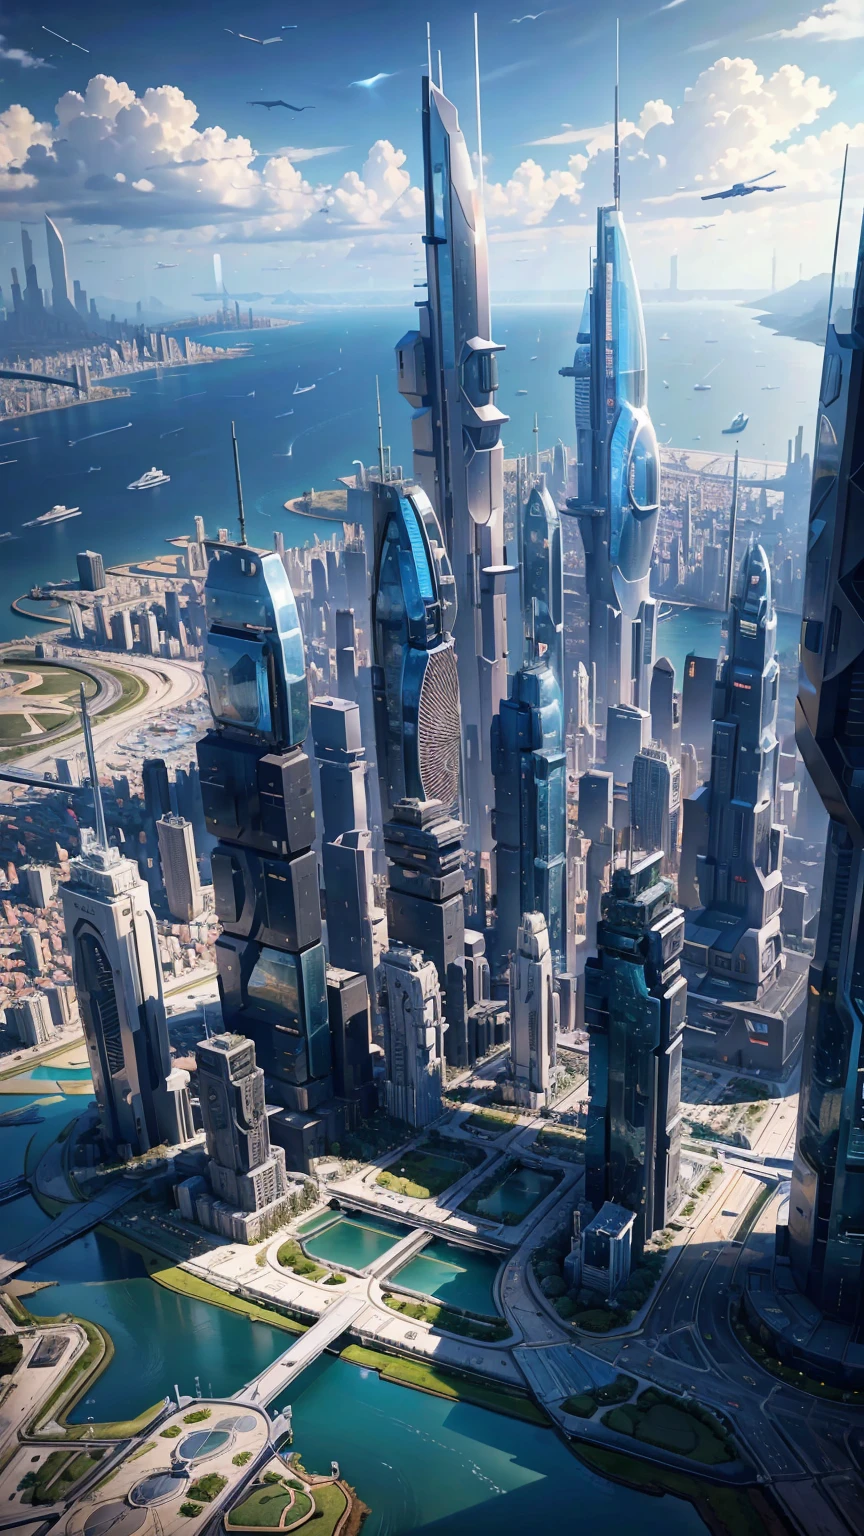 La ciudad del futuro vista desde un avión:1.5,puerto,nave espacial voladora,rascacielos,obra maestra,mejor calidad,Resolución ultraalta,(Muy detallado:1.2),8K,realidad,Mejor estetica,Hermoso